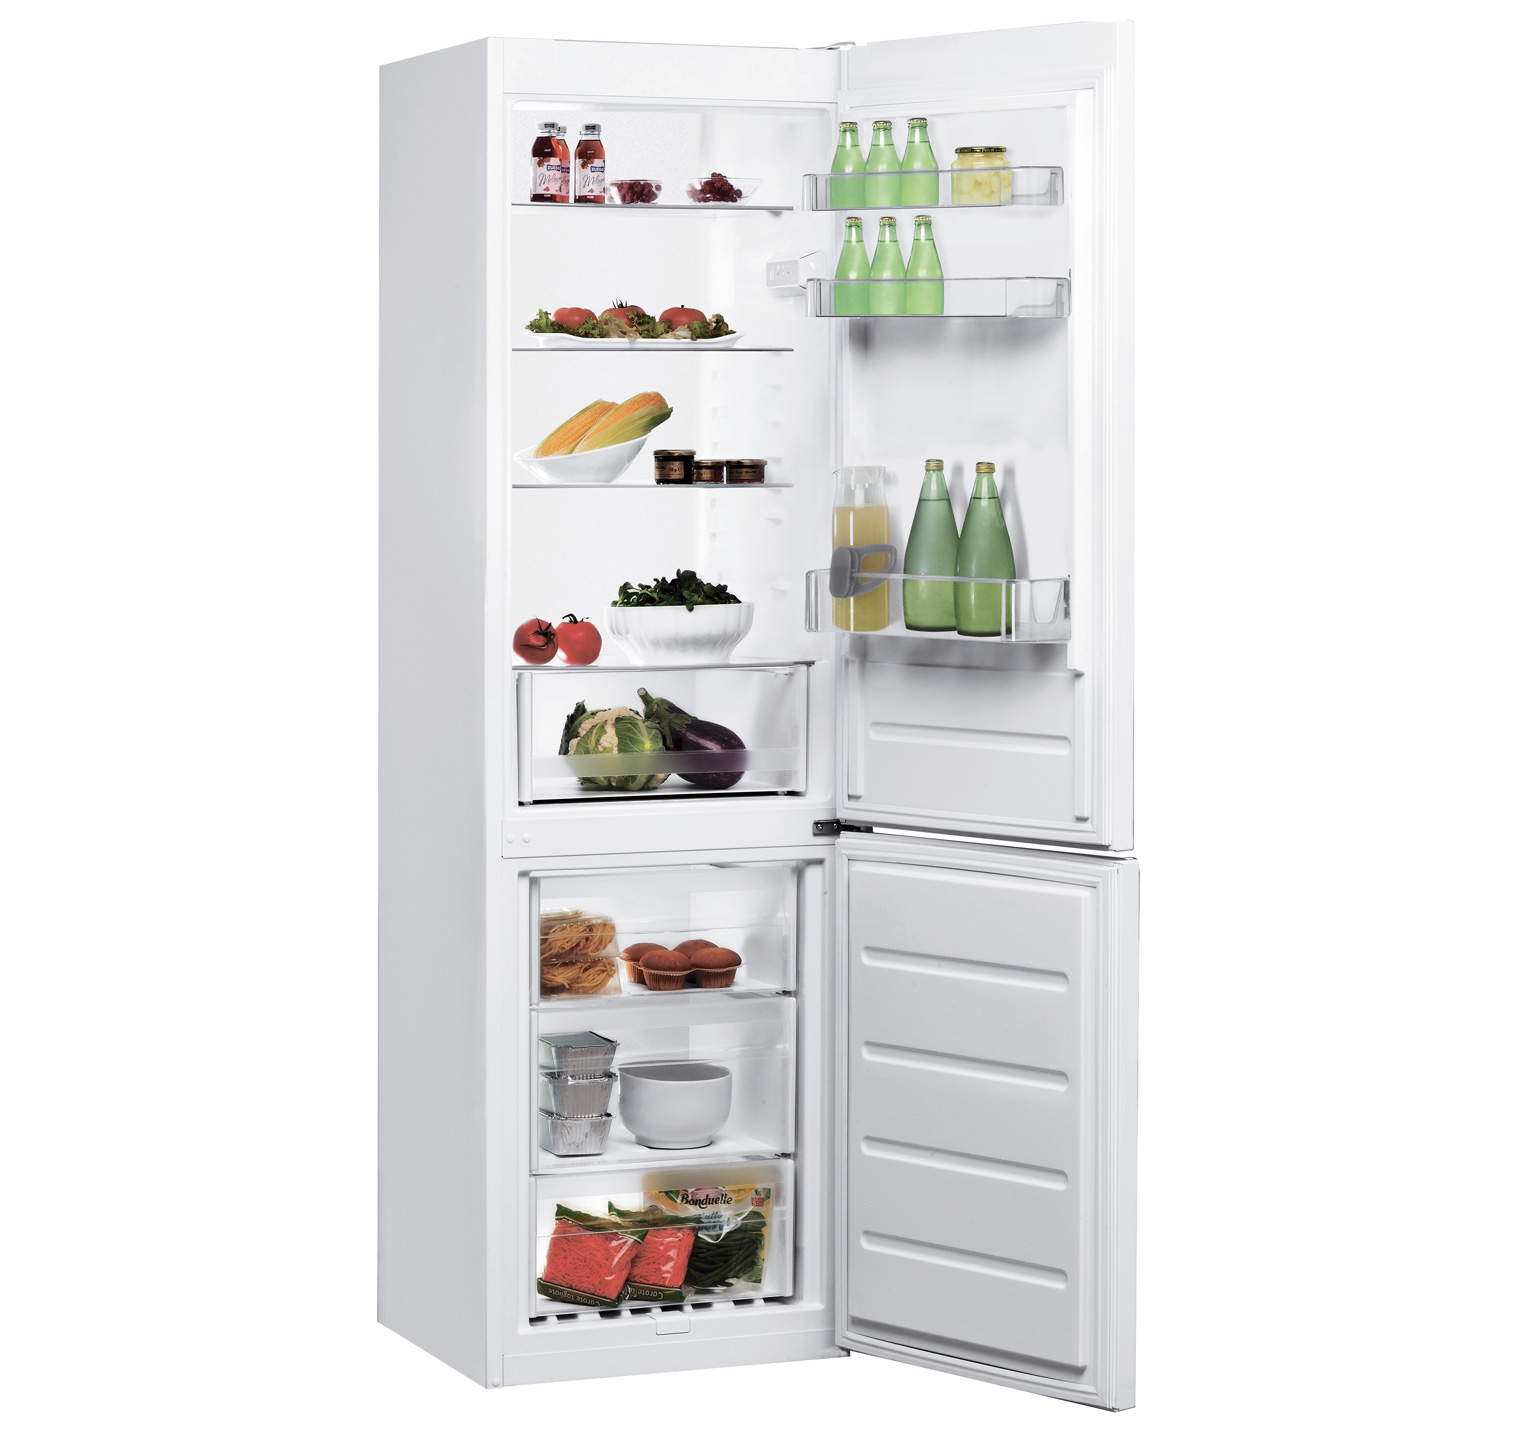 Двокамерний холодильник INDESIT LI8 S1 W + кредит 0% на 10 міс або сертифікат на 100 грн у подарунок + безплатна доставка!